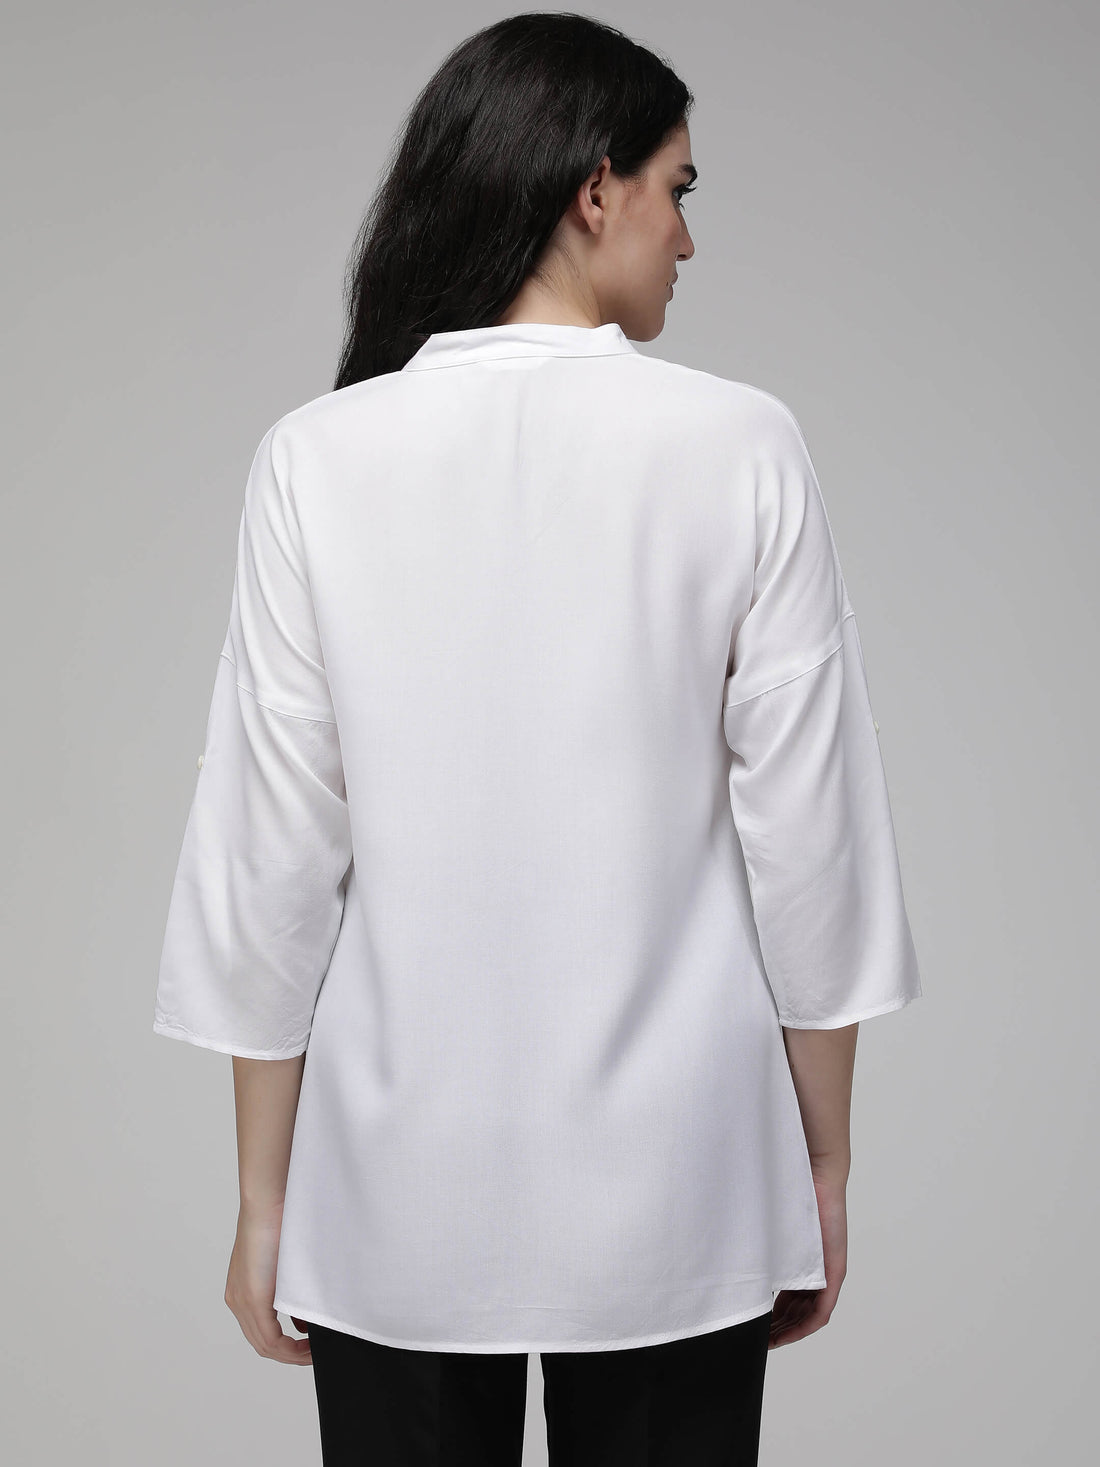 white oversized shirt